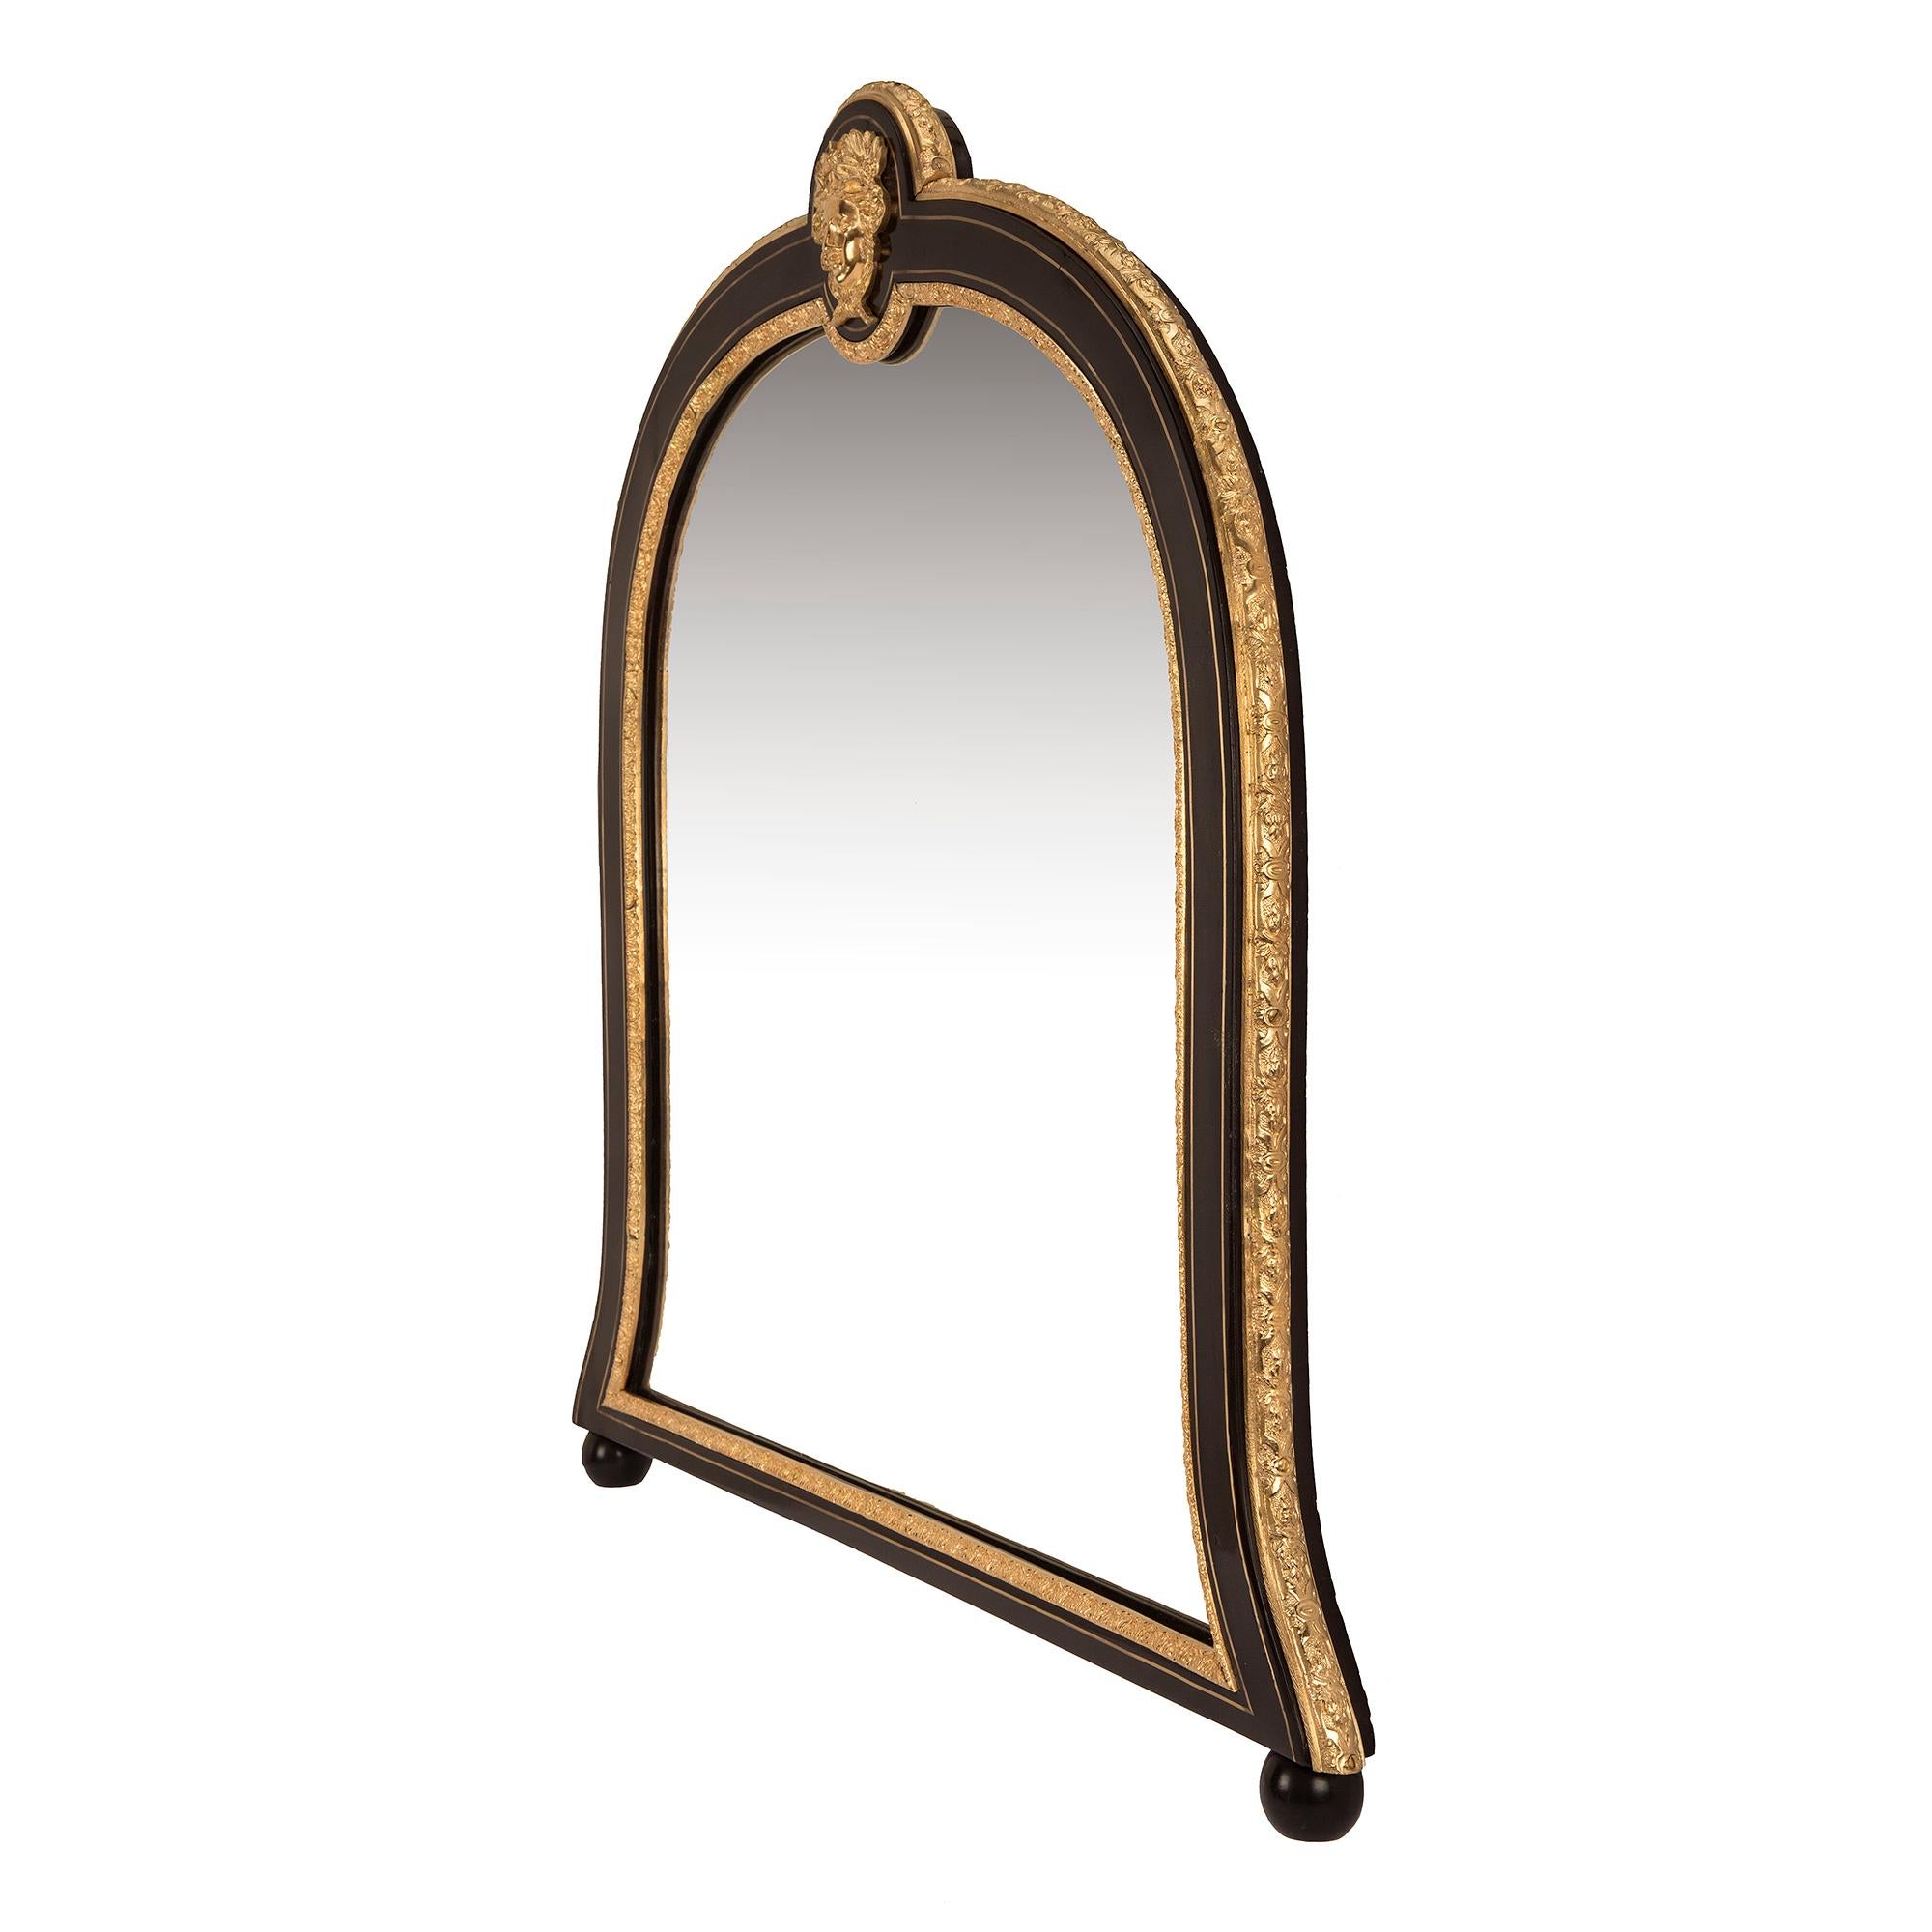 Une paire merveilleuse et très unique de miroirs montés en ébène, laiton et bronze doré, d'époque Napoléon III et de style Louis XIV, datant du 19e siècle. Les miroirs sont surélevés par deux pieds en forme de chignon tandis que les plaques de